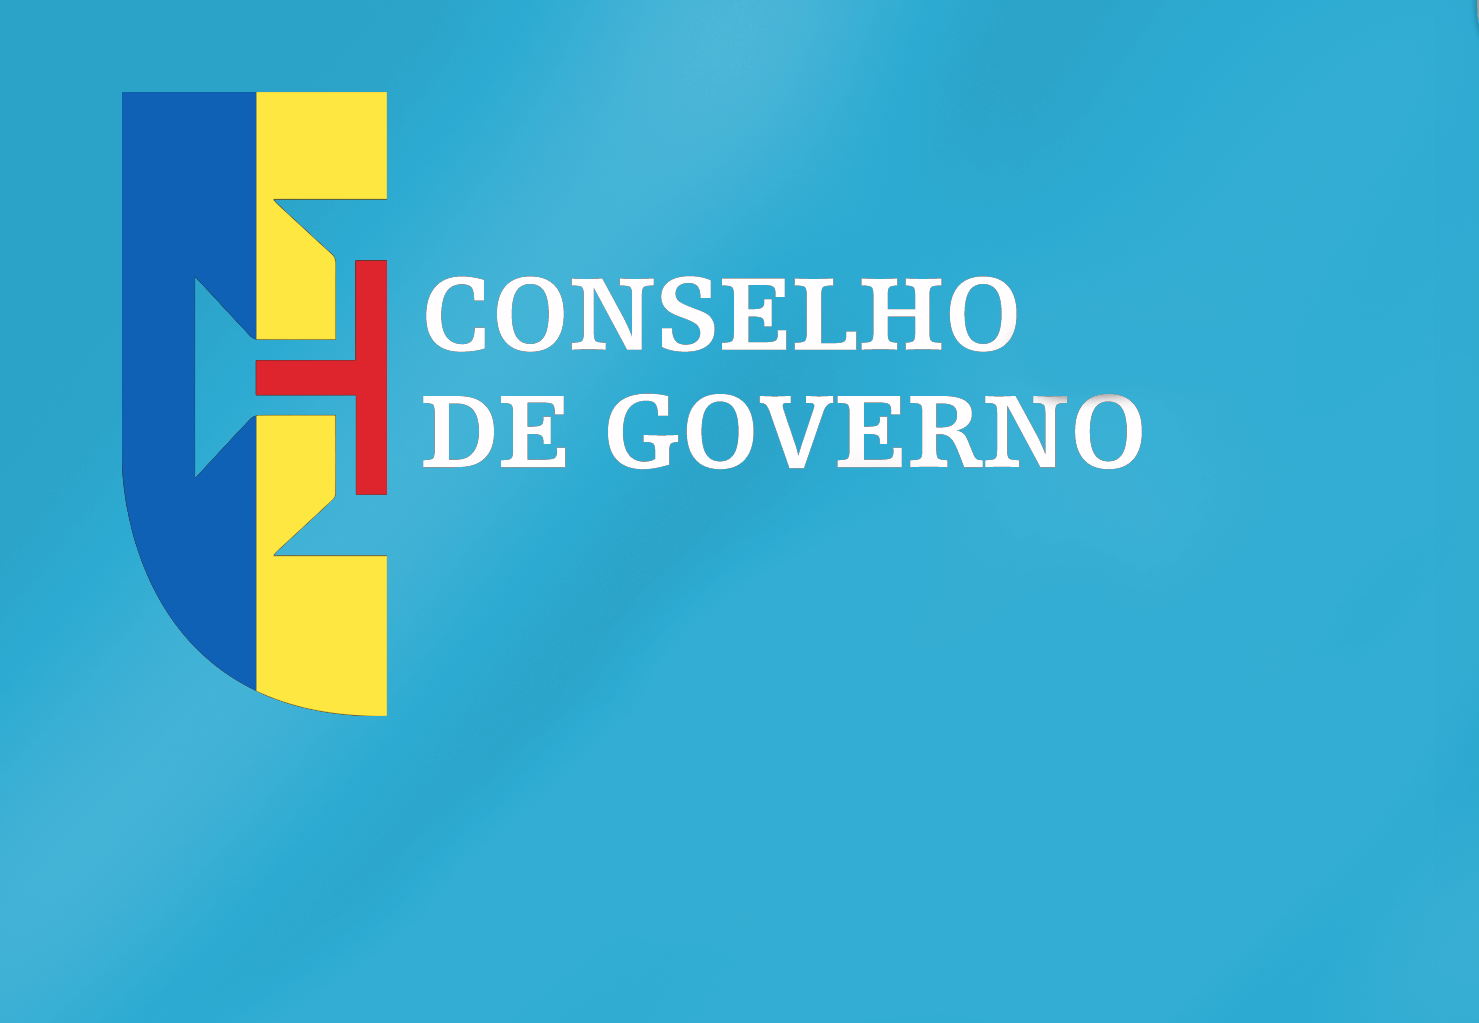 Conclusões Conselho de Governo - 31 de março de 2022